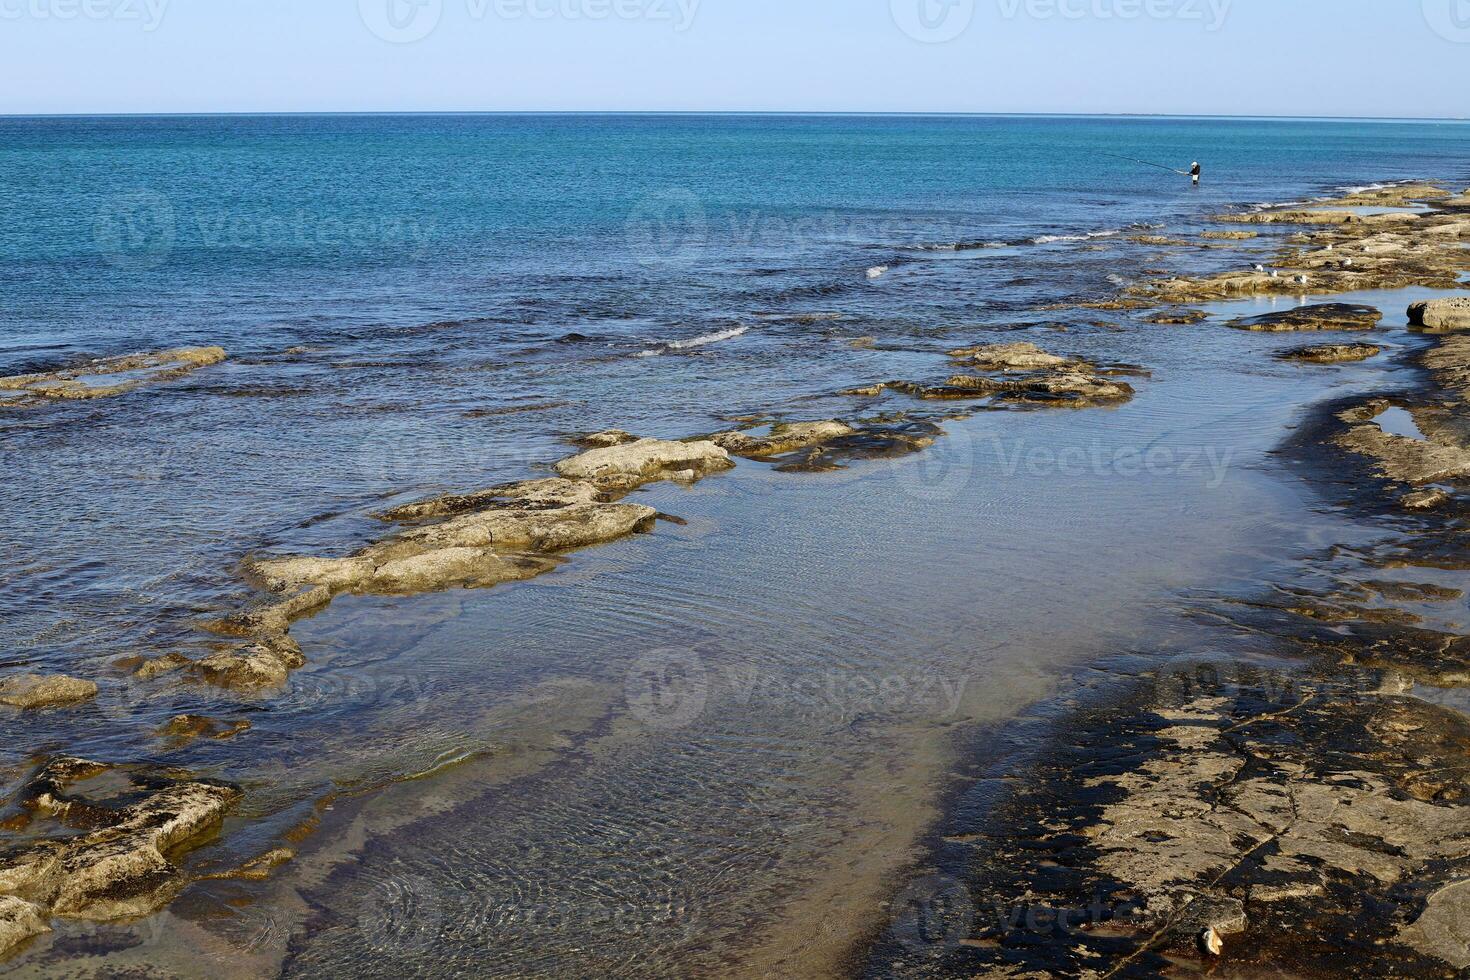 Medelhavets kust i norra Israel. foto